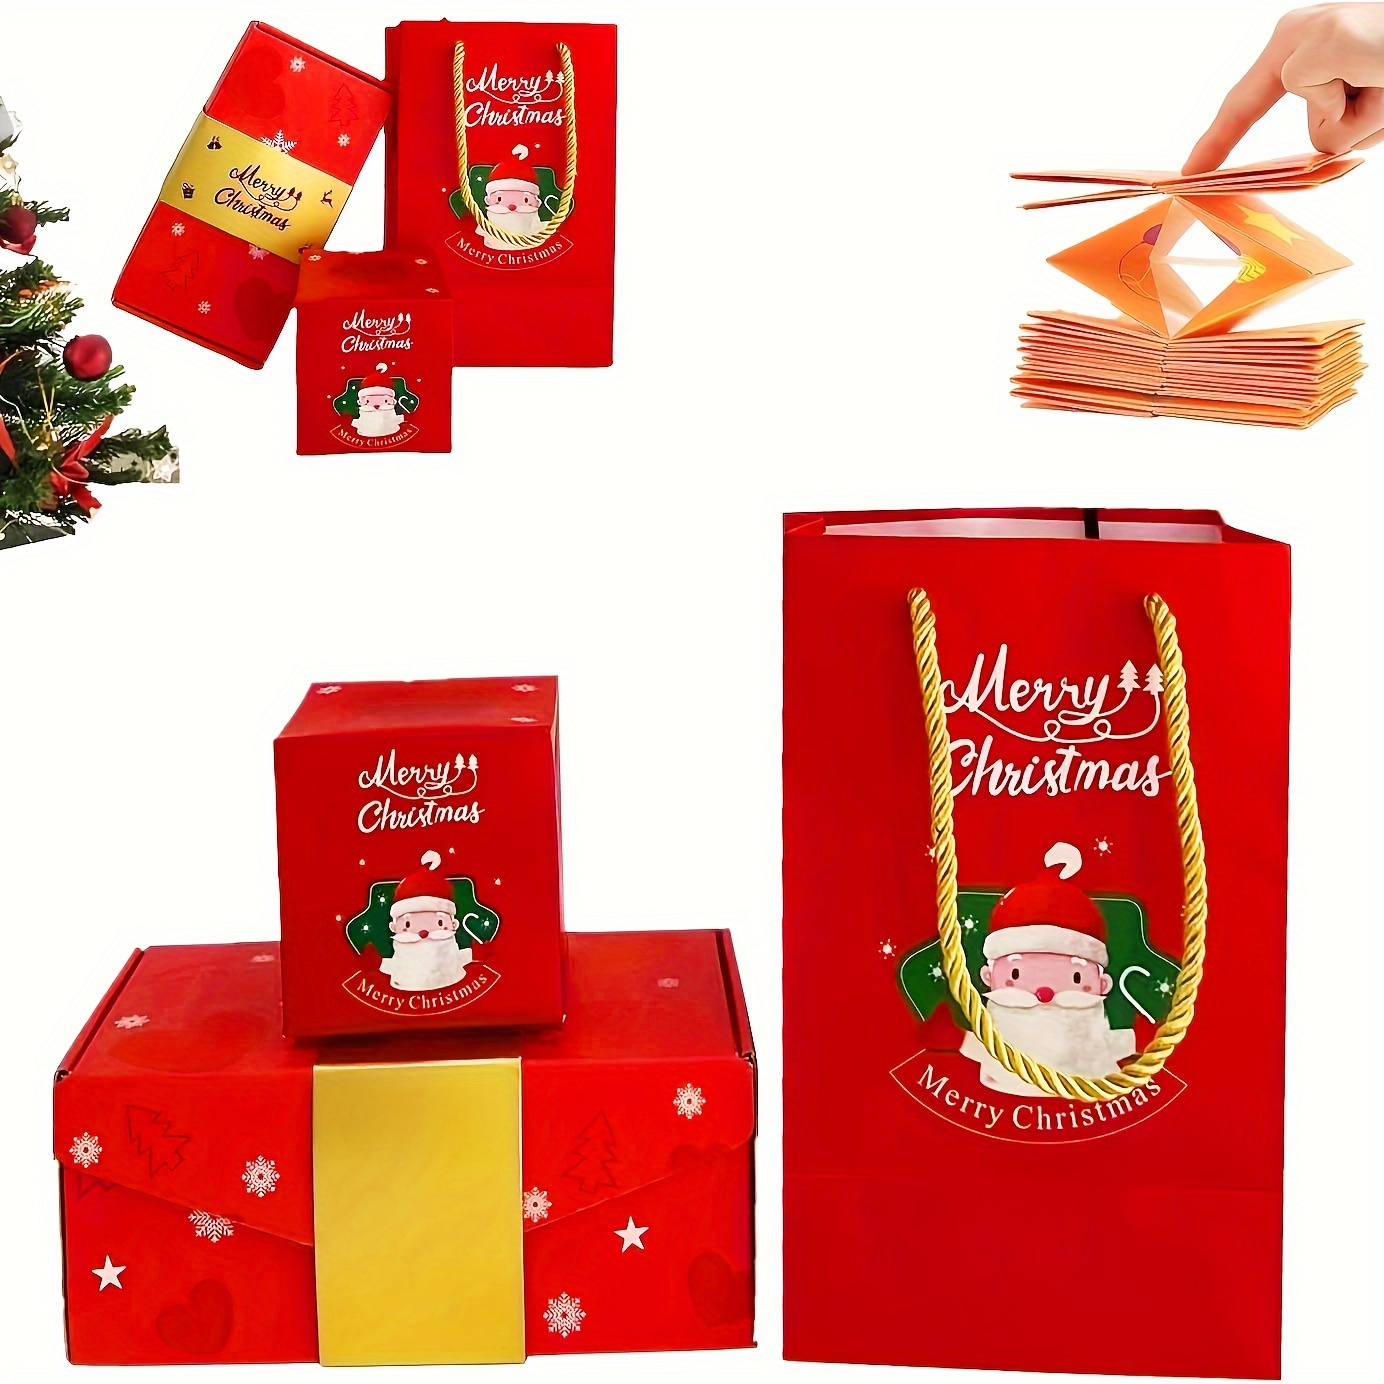  Caja de Navidad sorpresa, juego único de cajas de regalo rojas,  caja de regalo sorpresa explosionn bonita caja creativa explosiva cajas de  rebote para regalo de Navidad, vacaciones, cumpleaños, Acción de